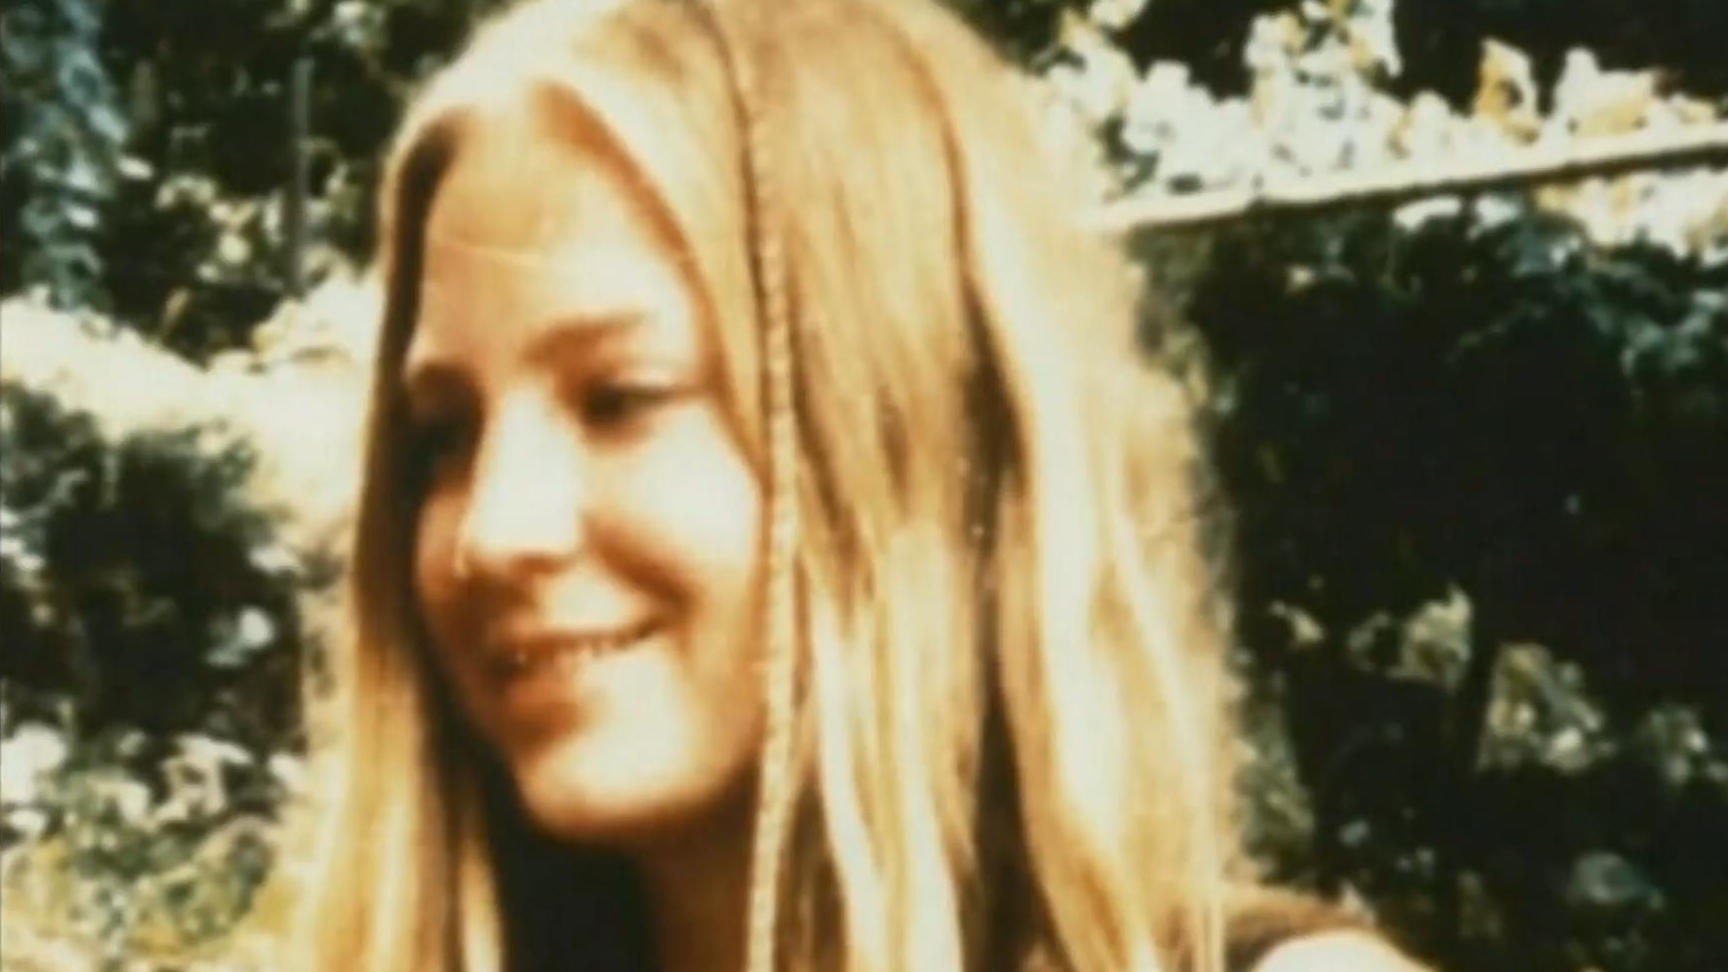 Vermisstenfall nach 26 Jahren vor Aufklärung Mord an Sonja Engelbrecht